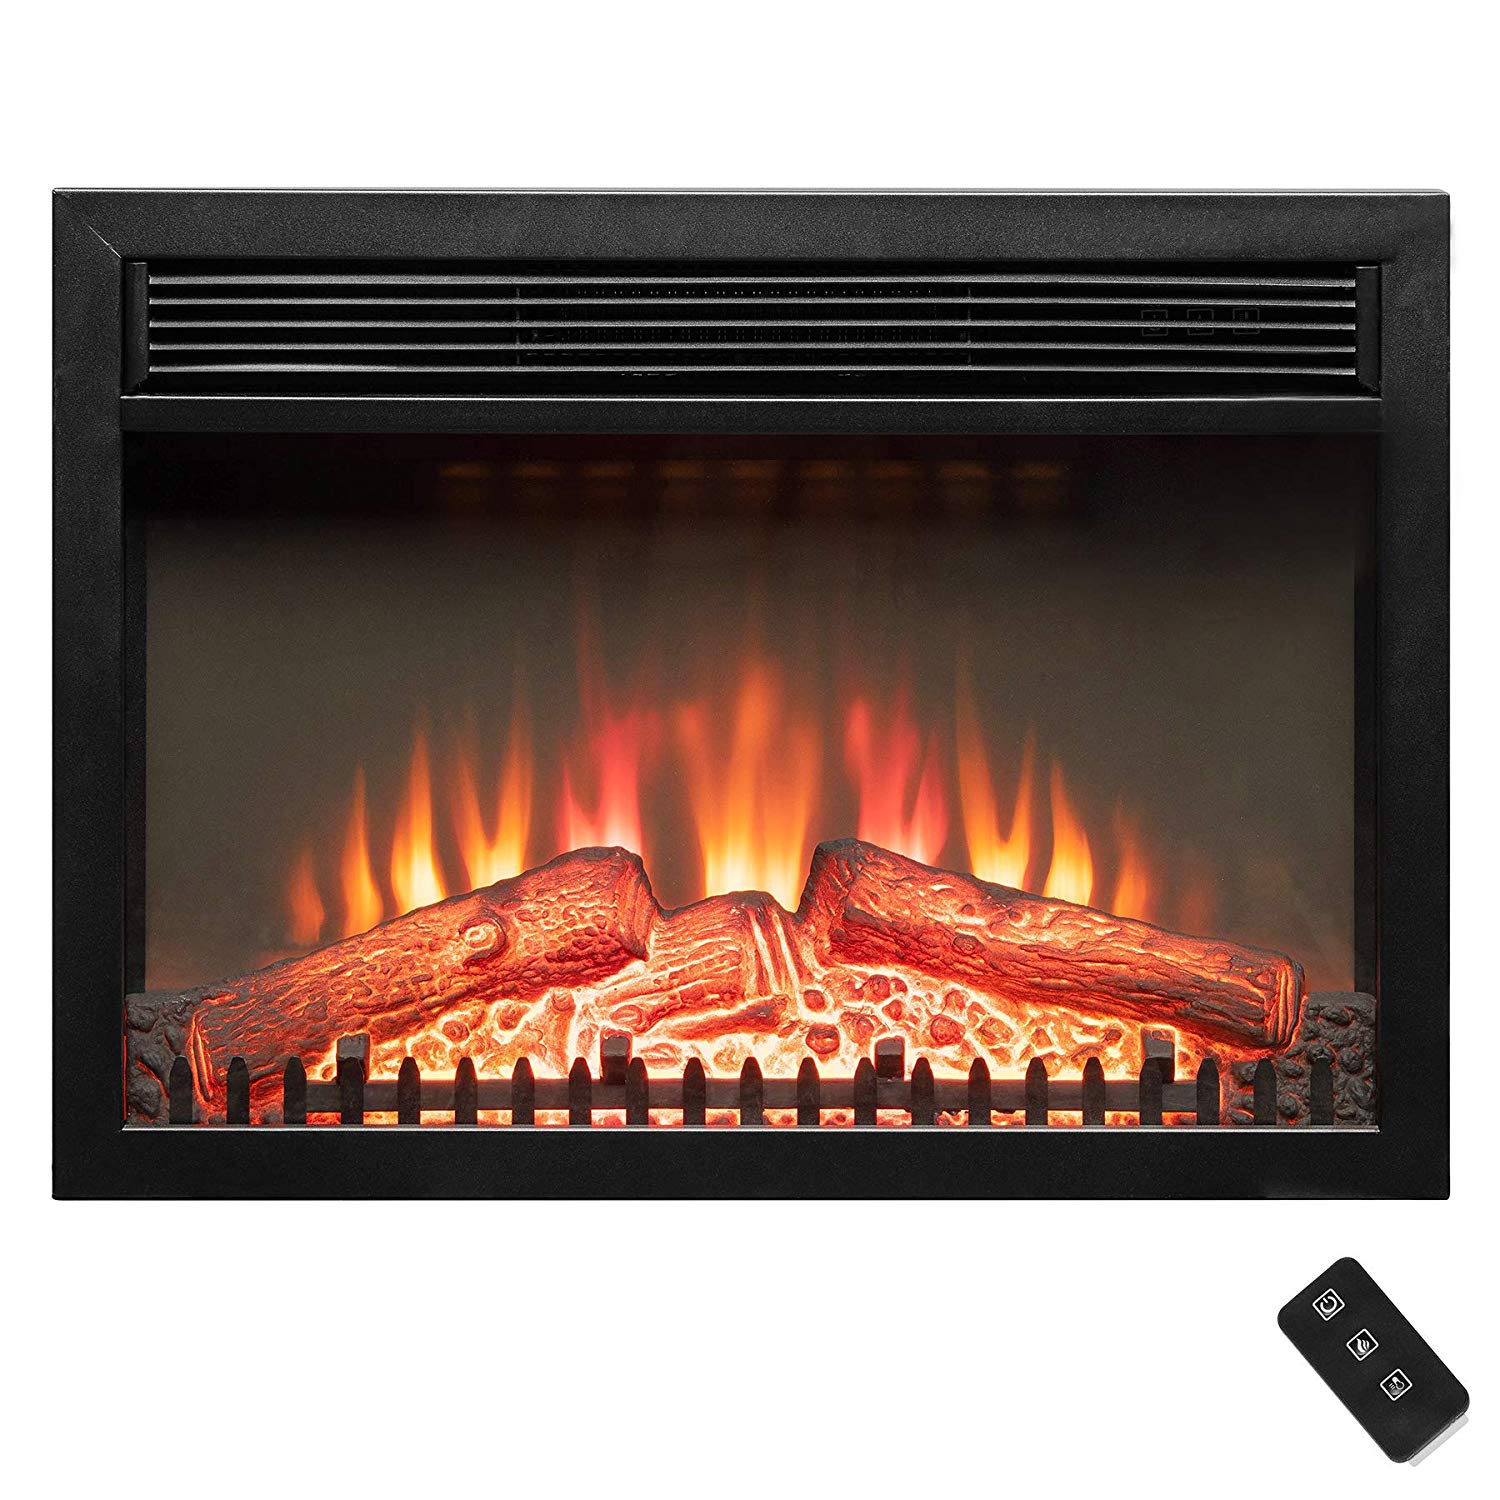 Ashley Wood Burning Fireplace Insert Luxury Amazon Golden Vantage 23" 5200 Btu 1500w Adjustable